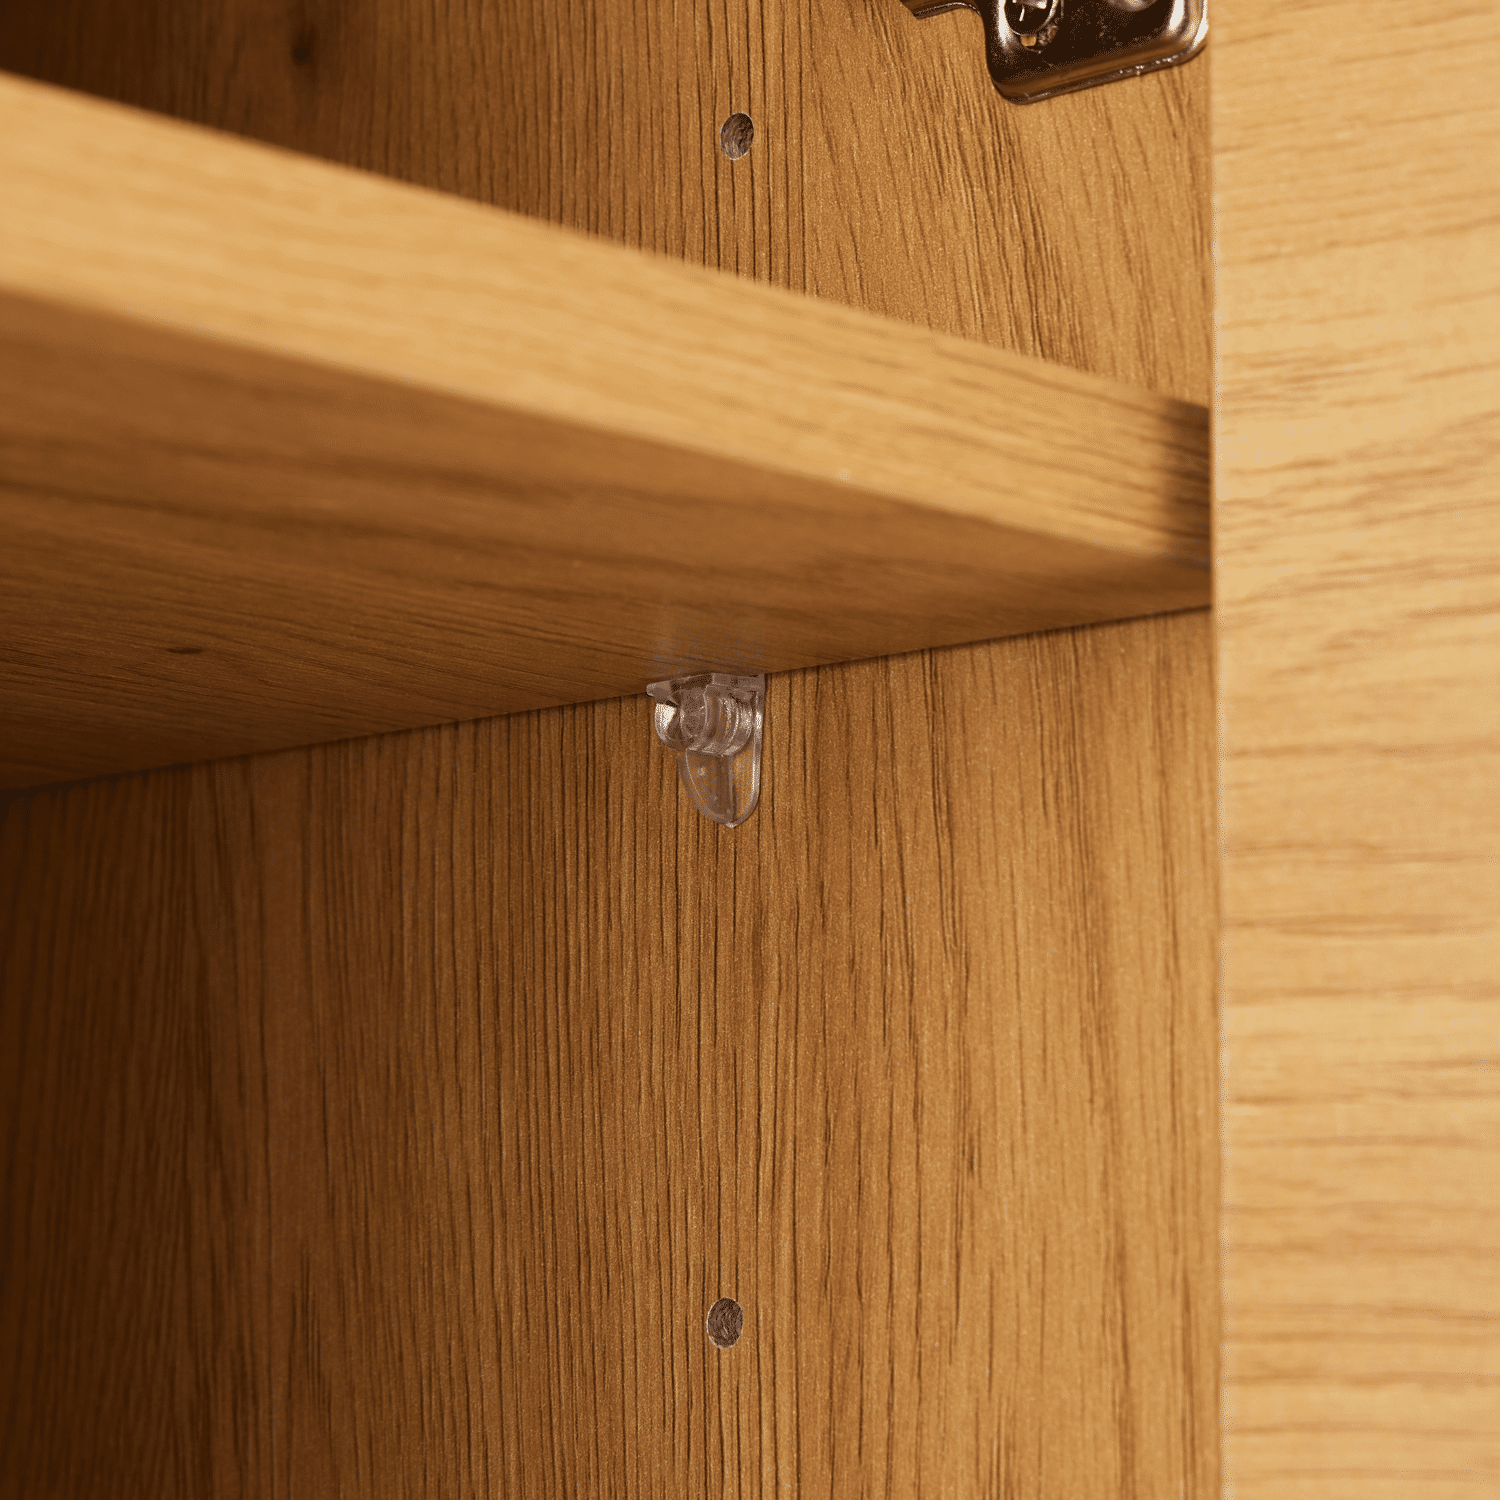 STINNA 2-deurs houten servieskast 80cm